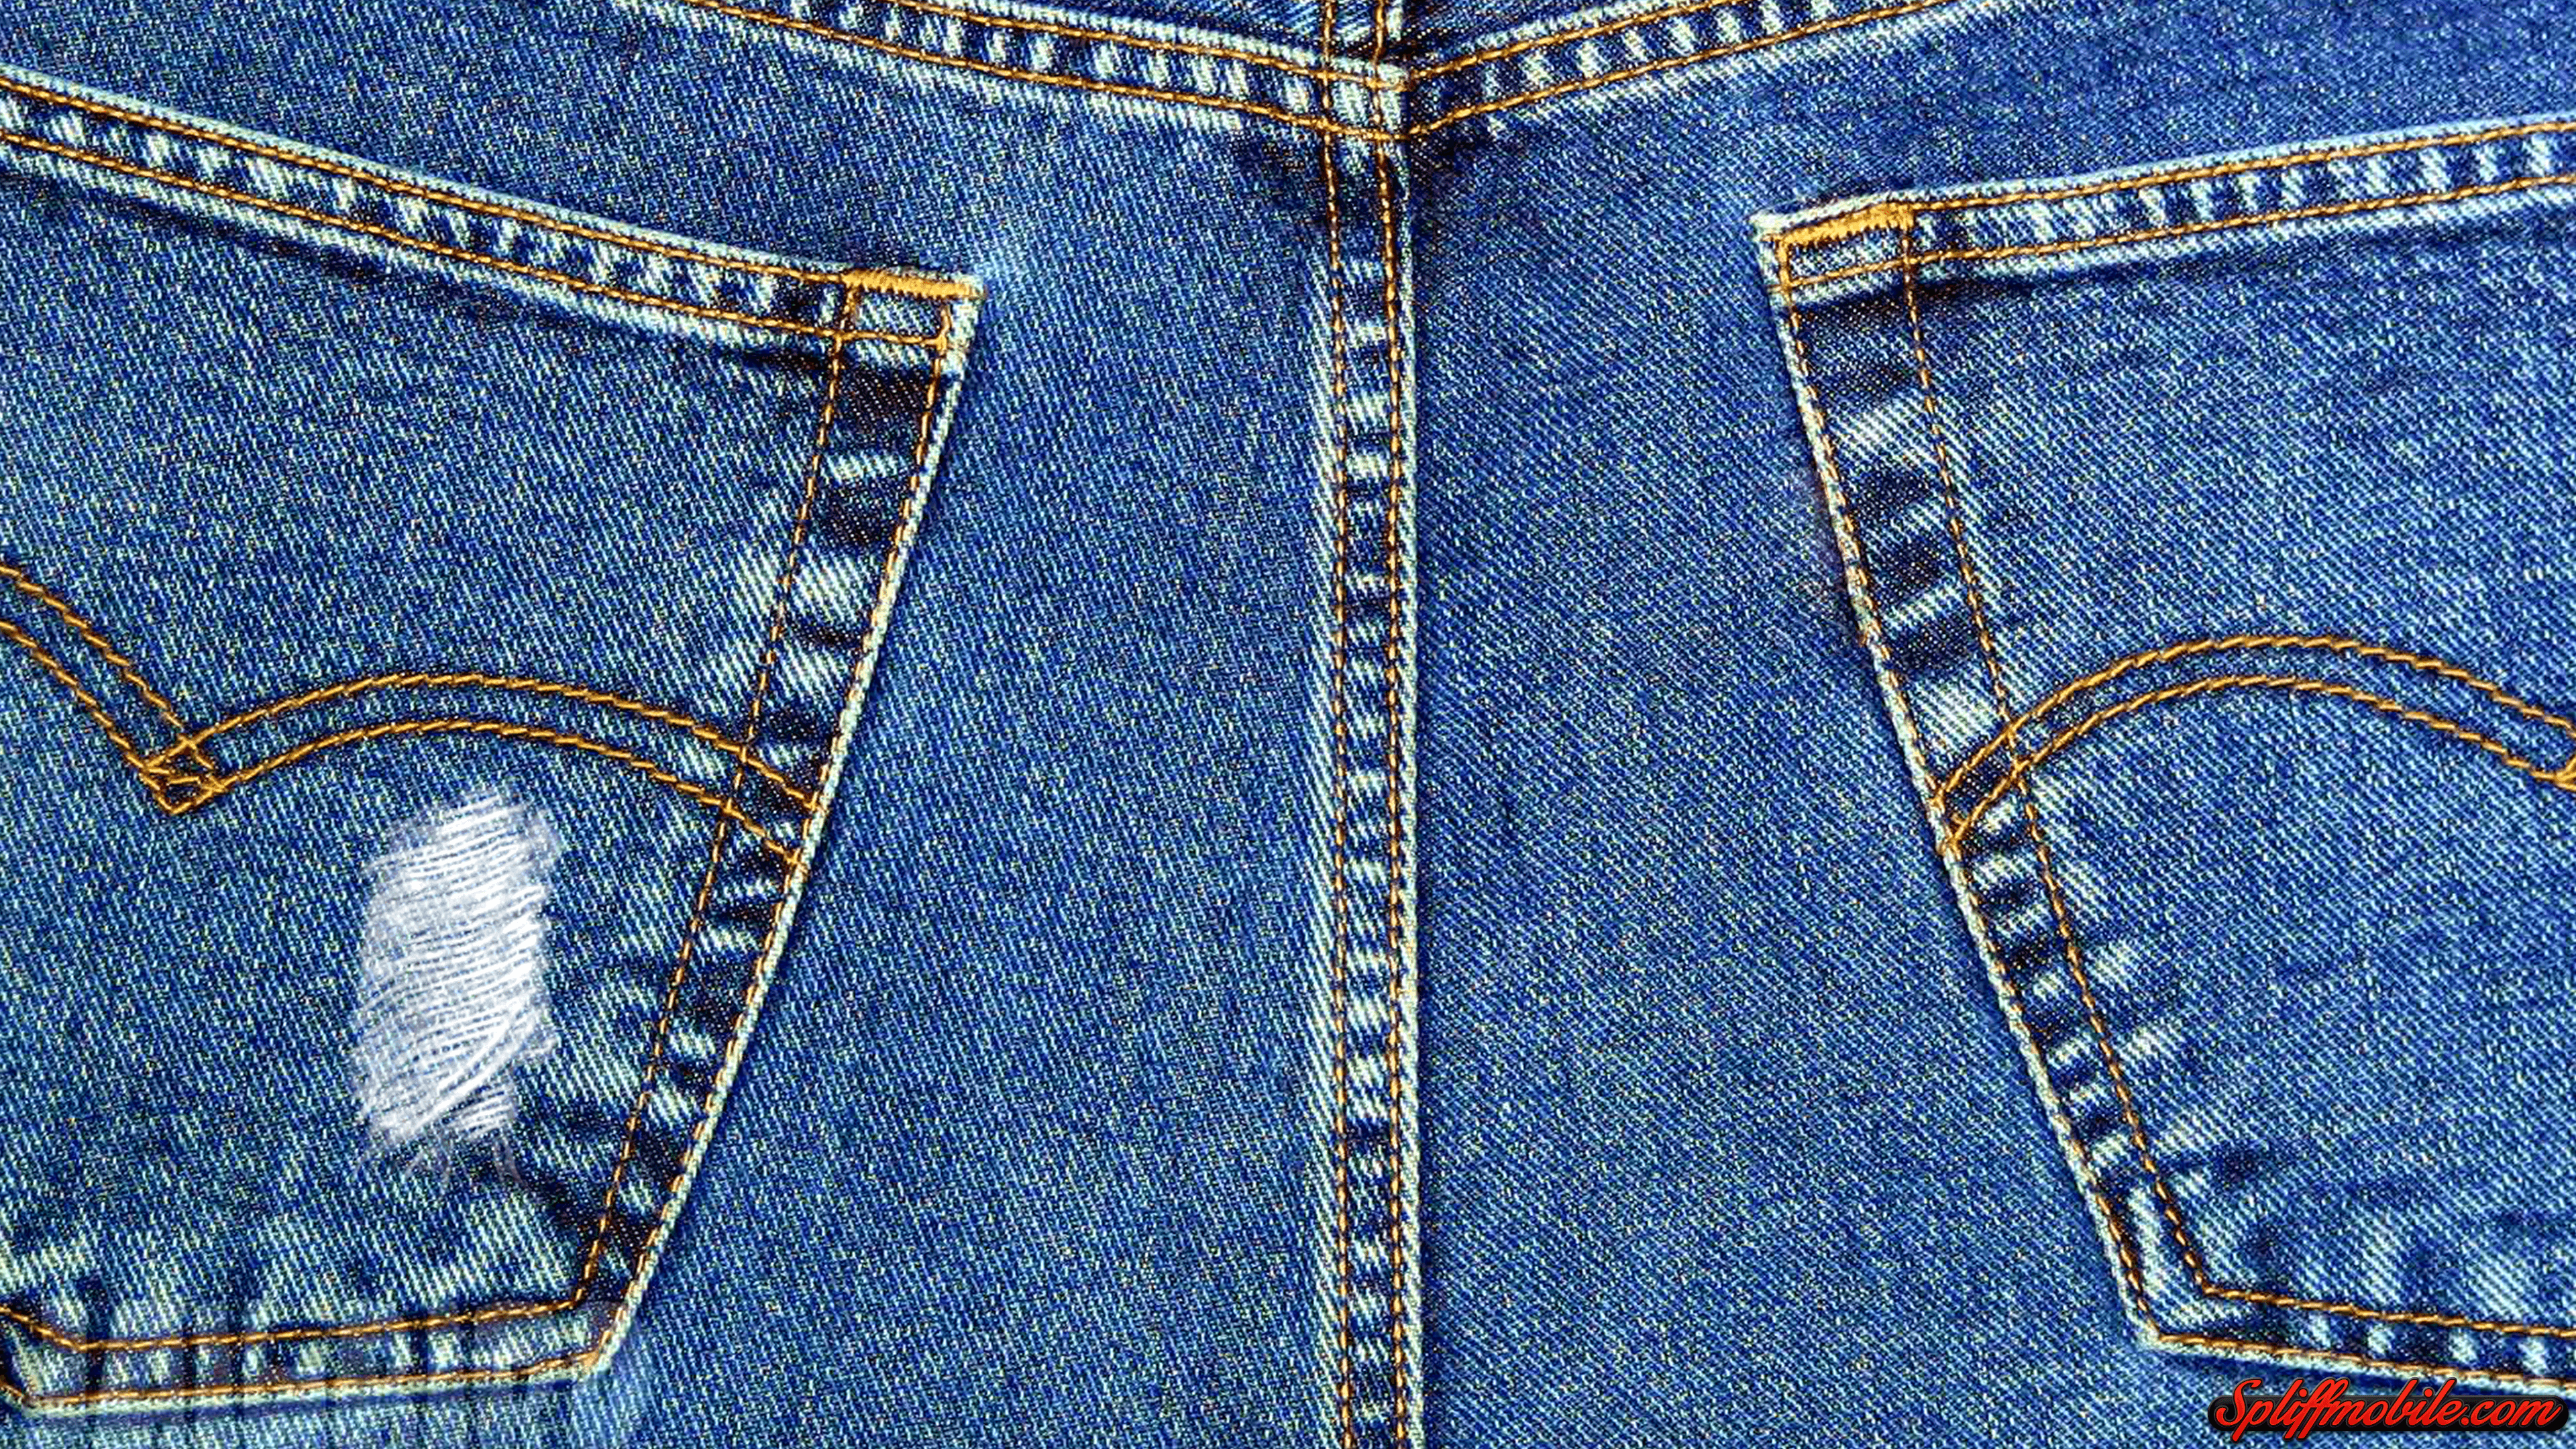 Denim Jeans  Background HD wallpaper  Pxfuel